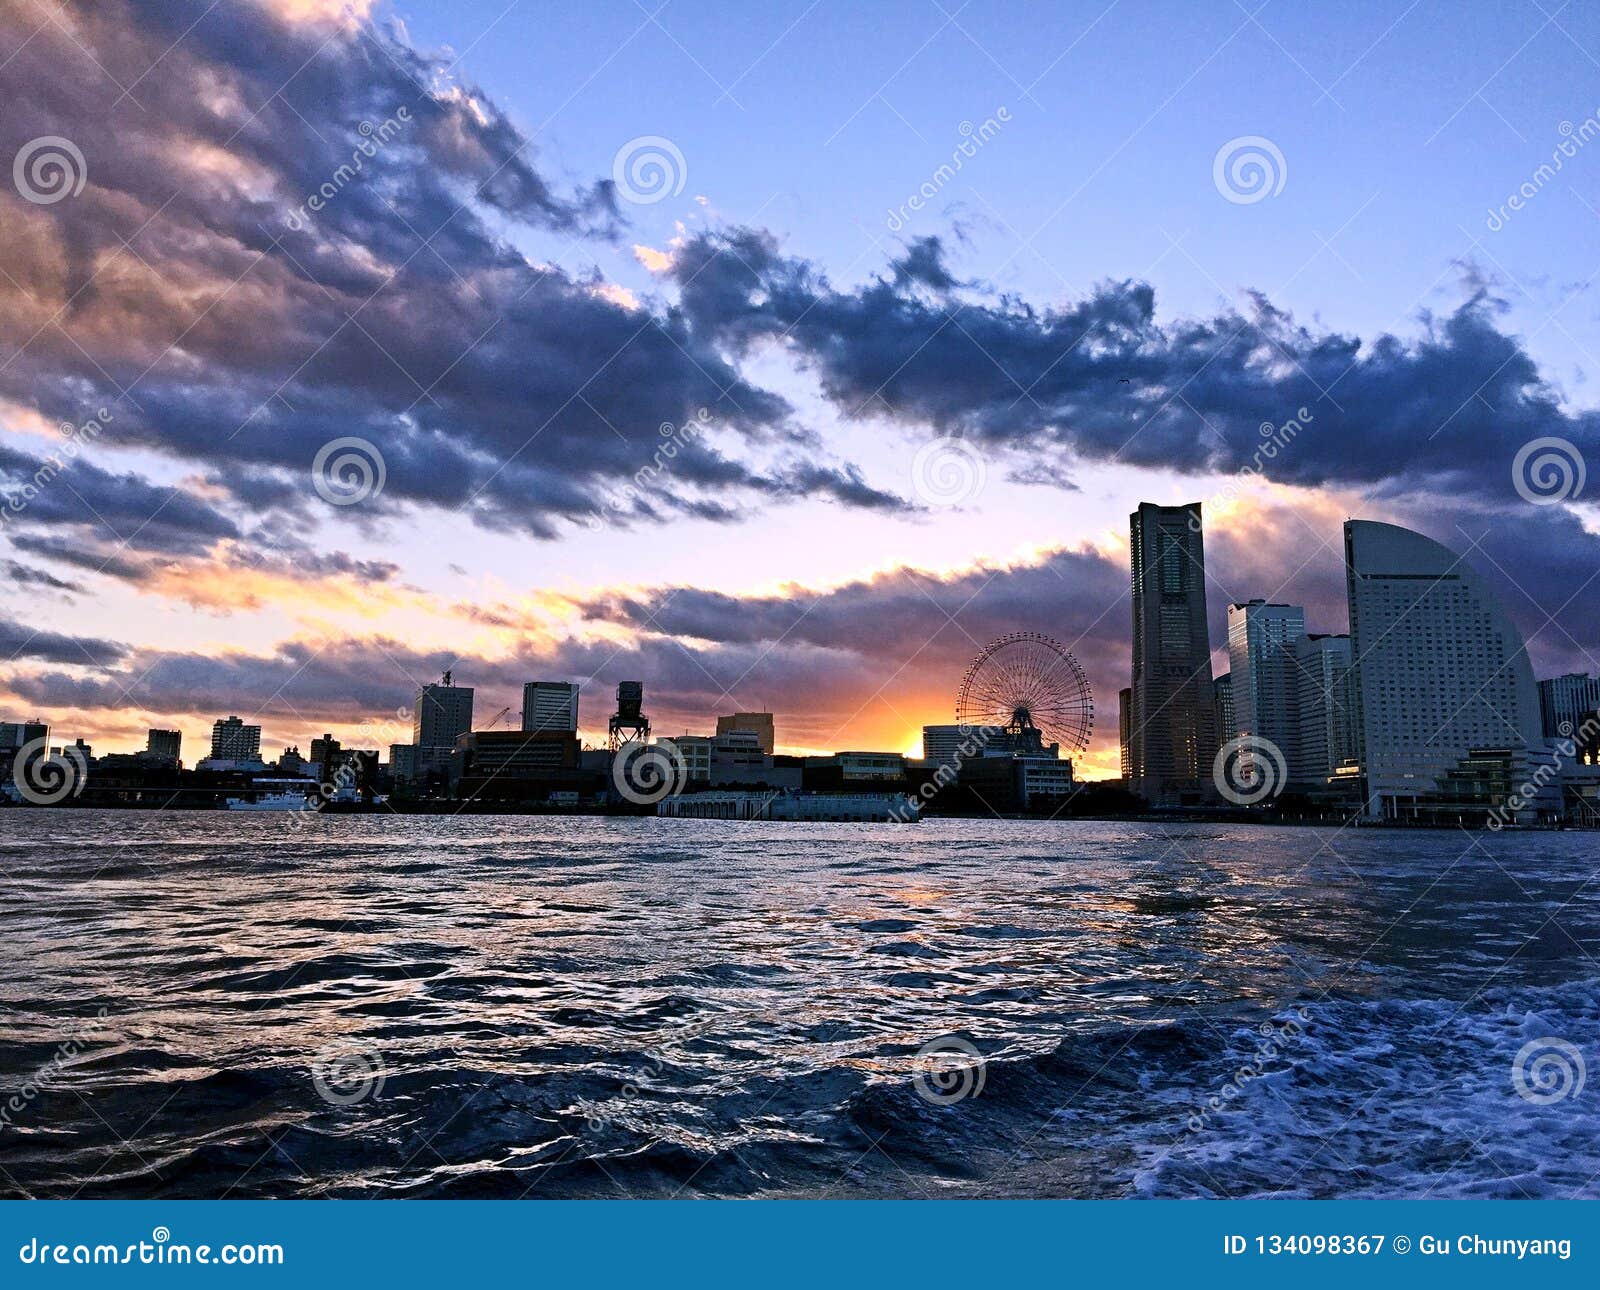 Beautiful city at dusk stock image. Image of seascape - 134098367